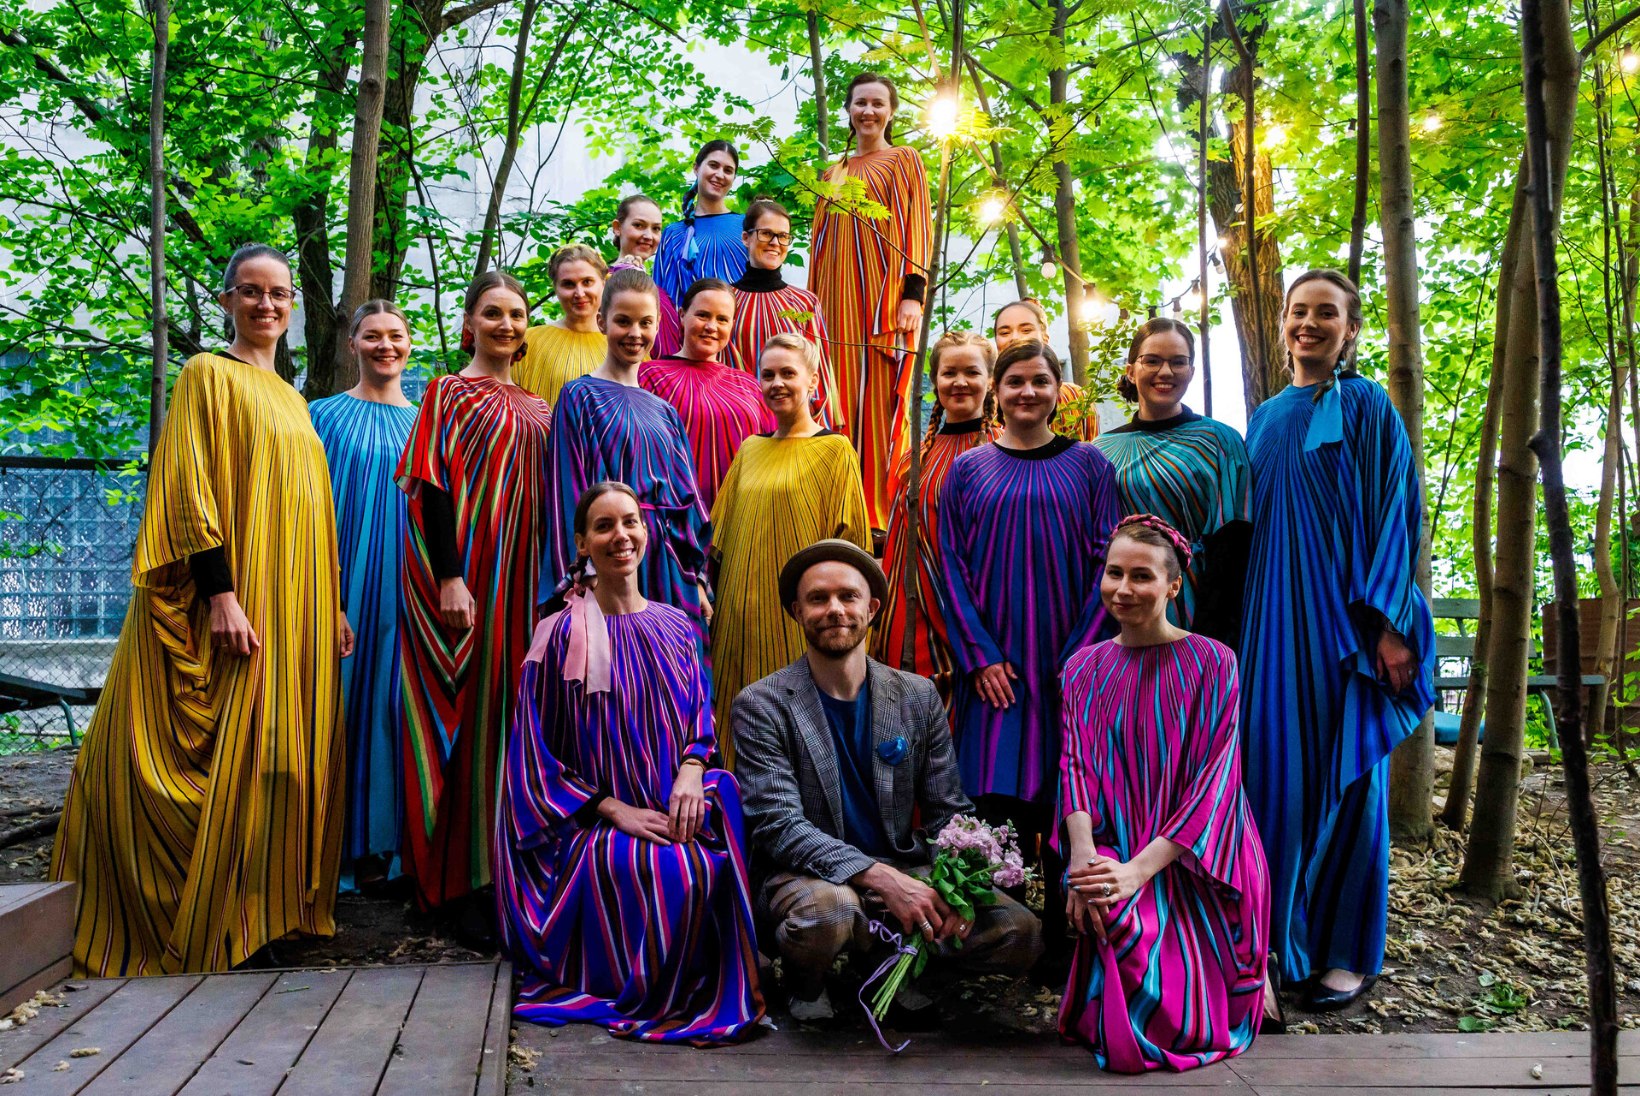 GALERII | Tanel Veenre tähistab Eesti rahvakultuuri ja üllatab folk-kollektsiooniga